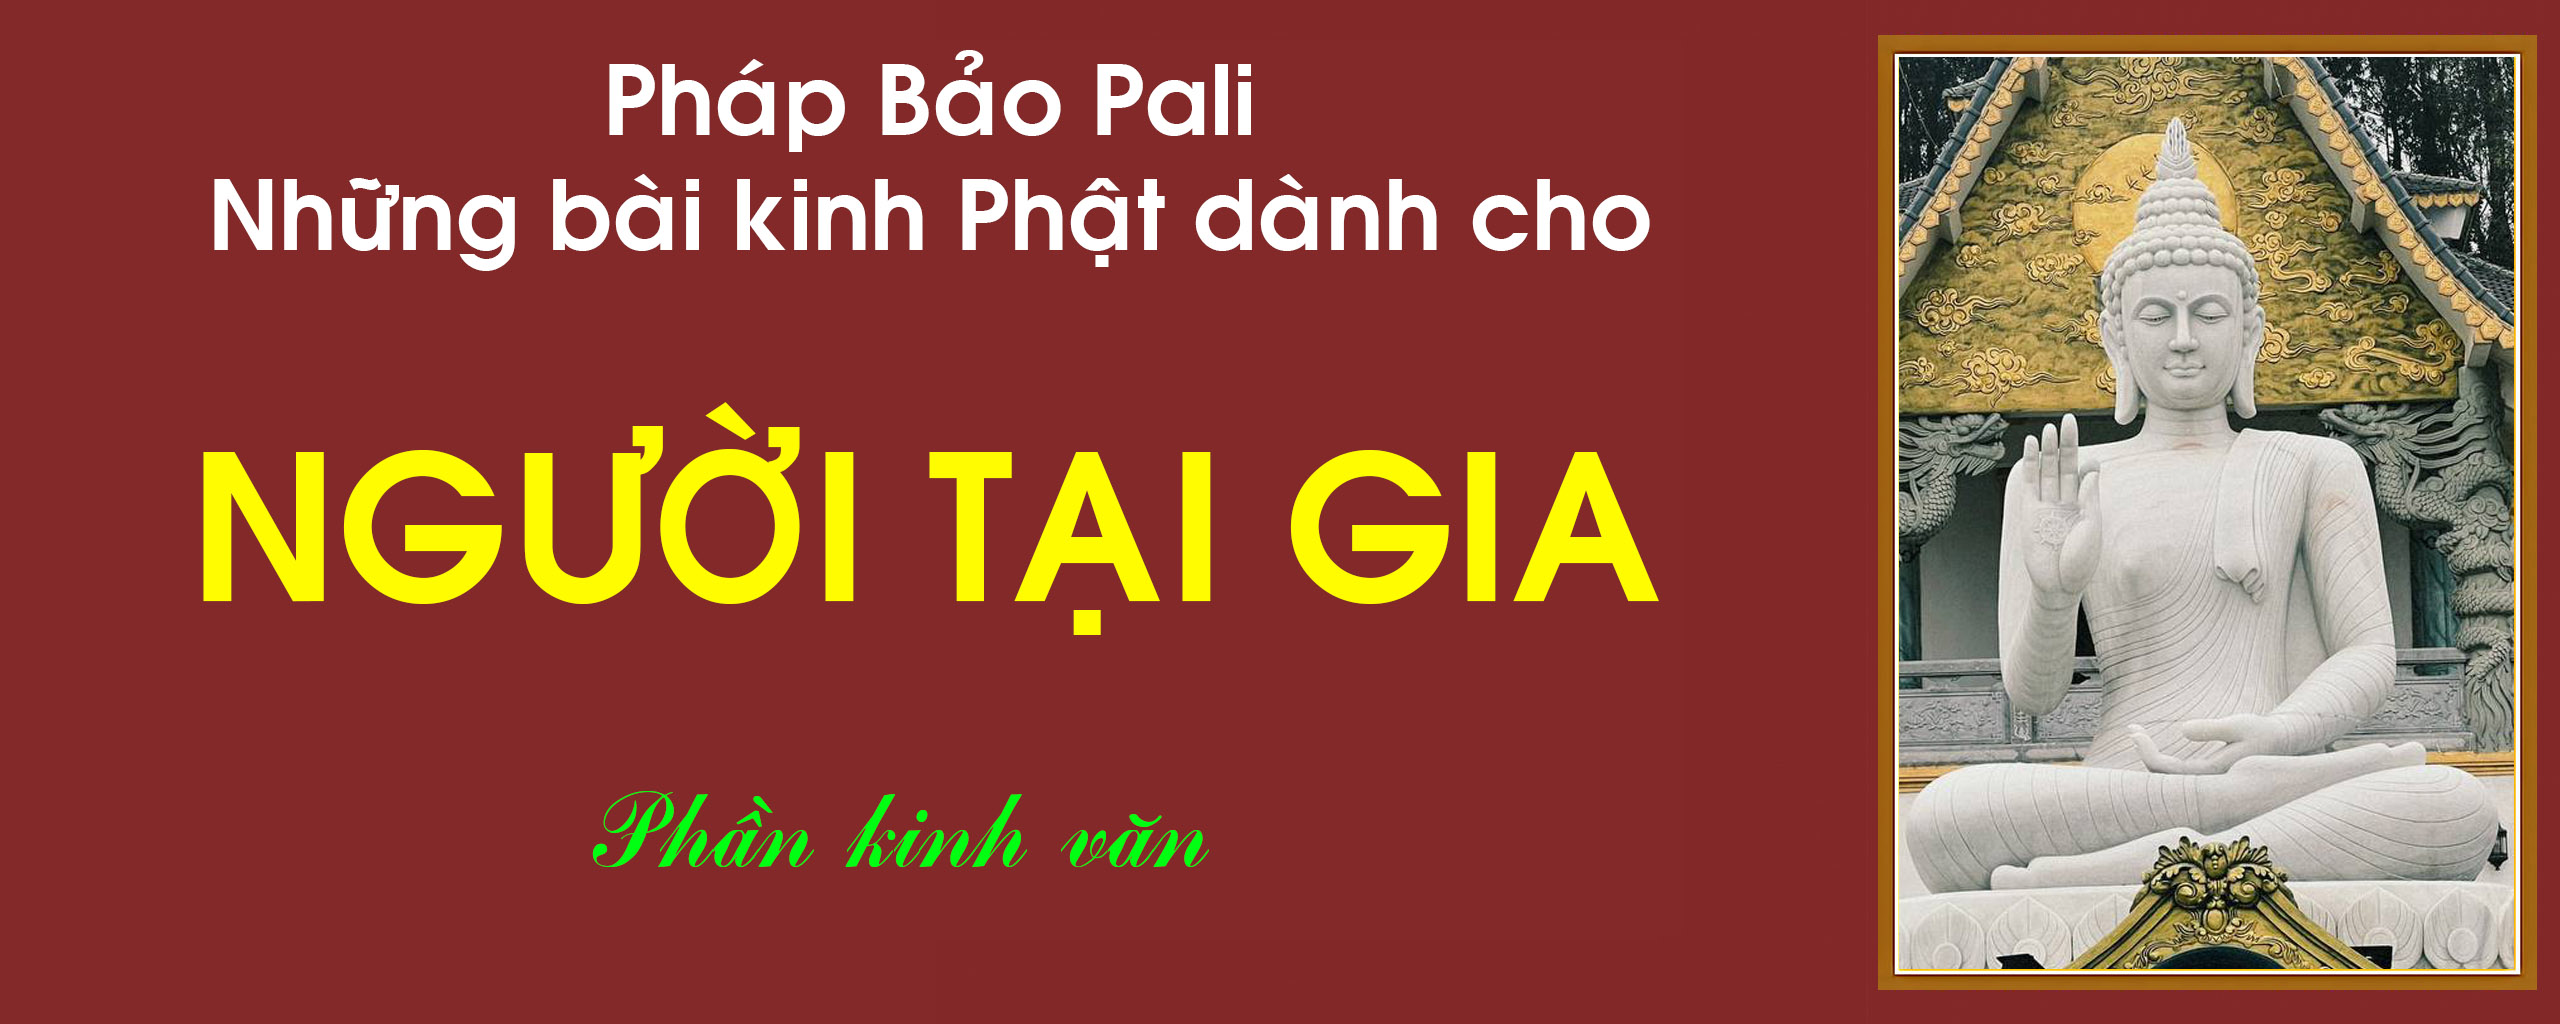 Kinh Phat Pali danh cho nguoi tai gia